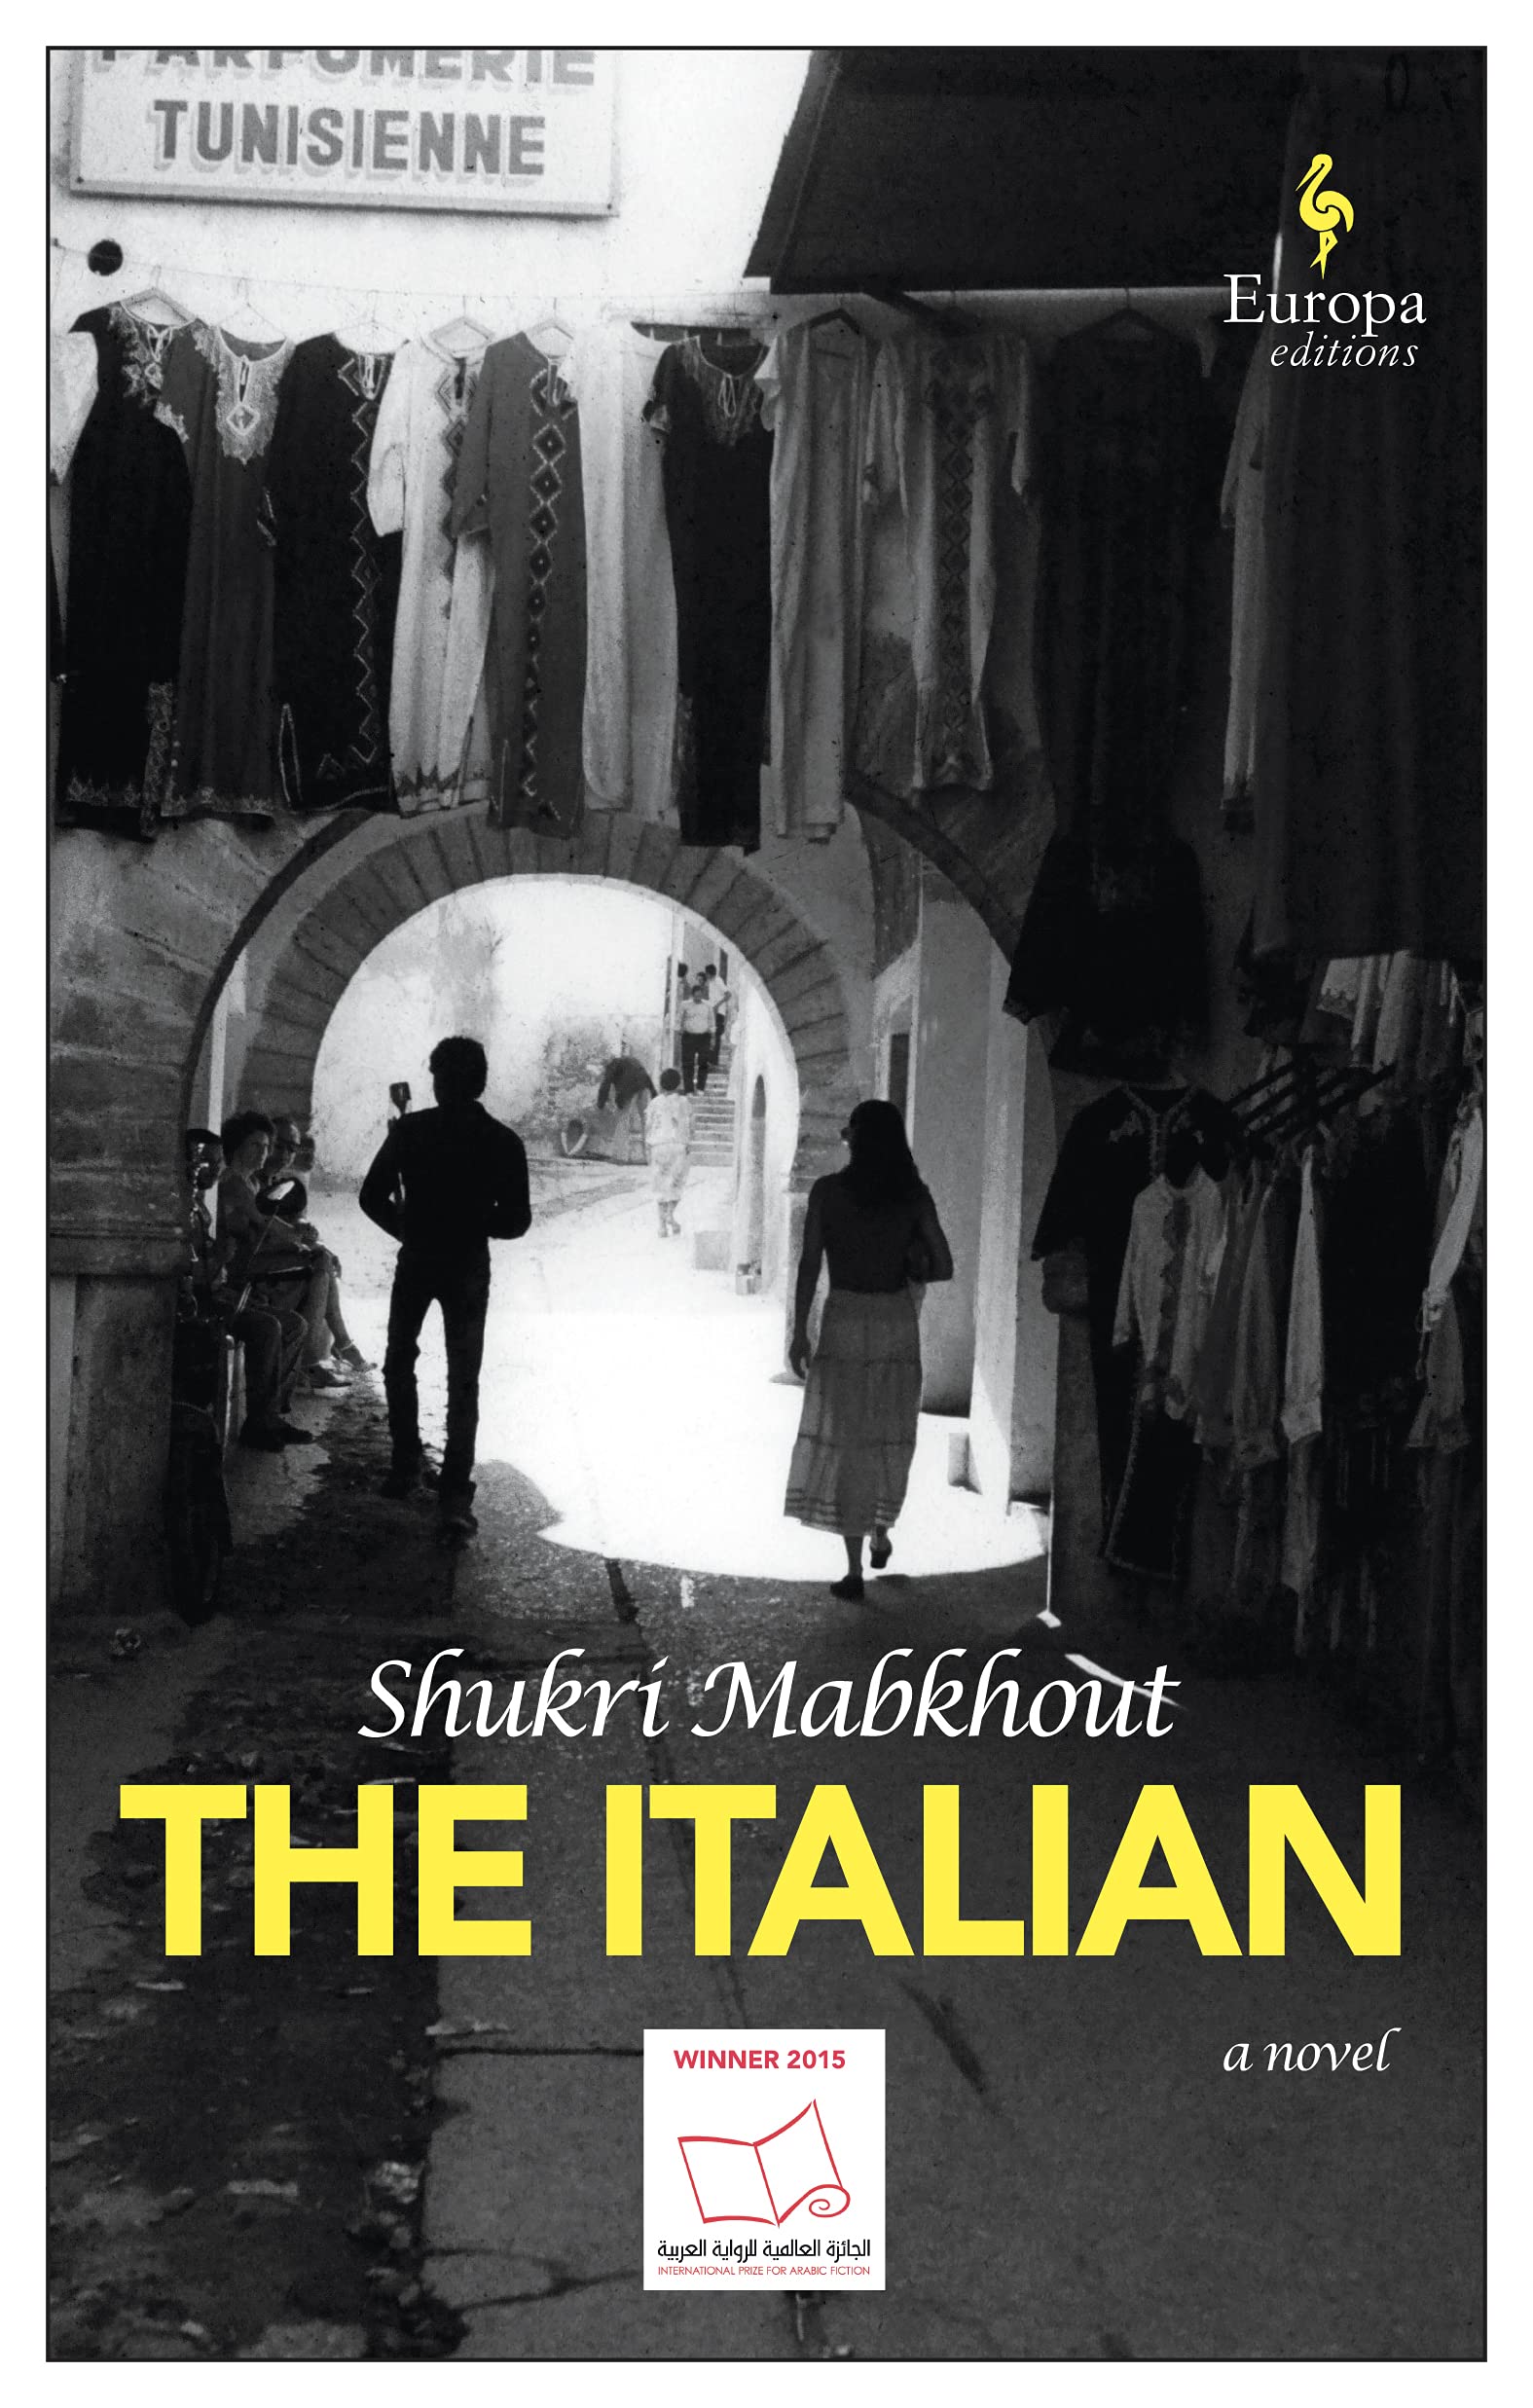 The Italian | Shukri Mabkouth image18